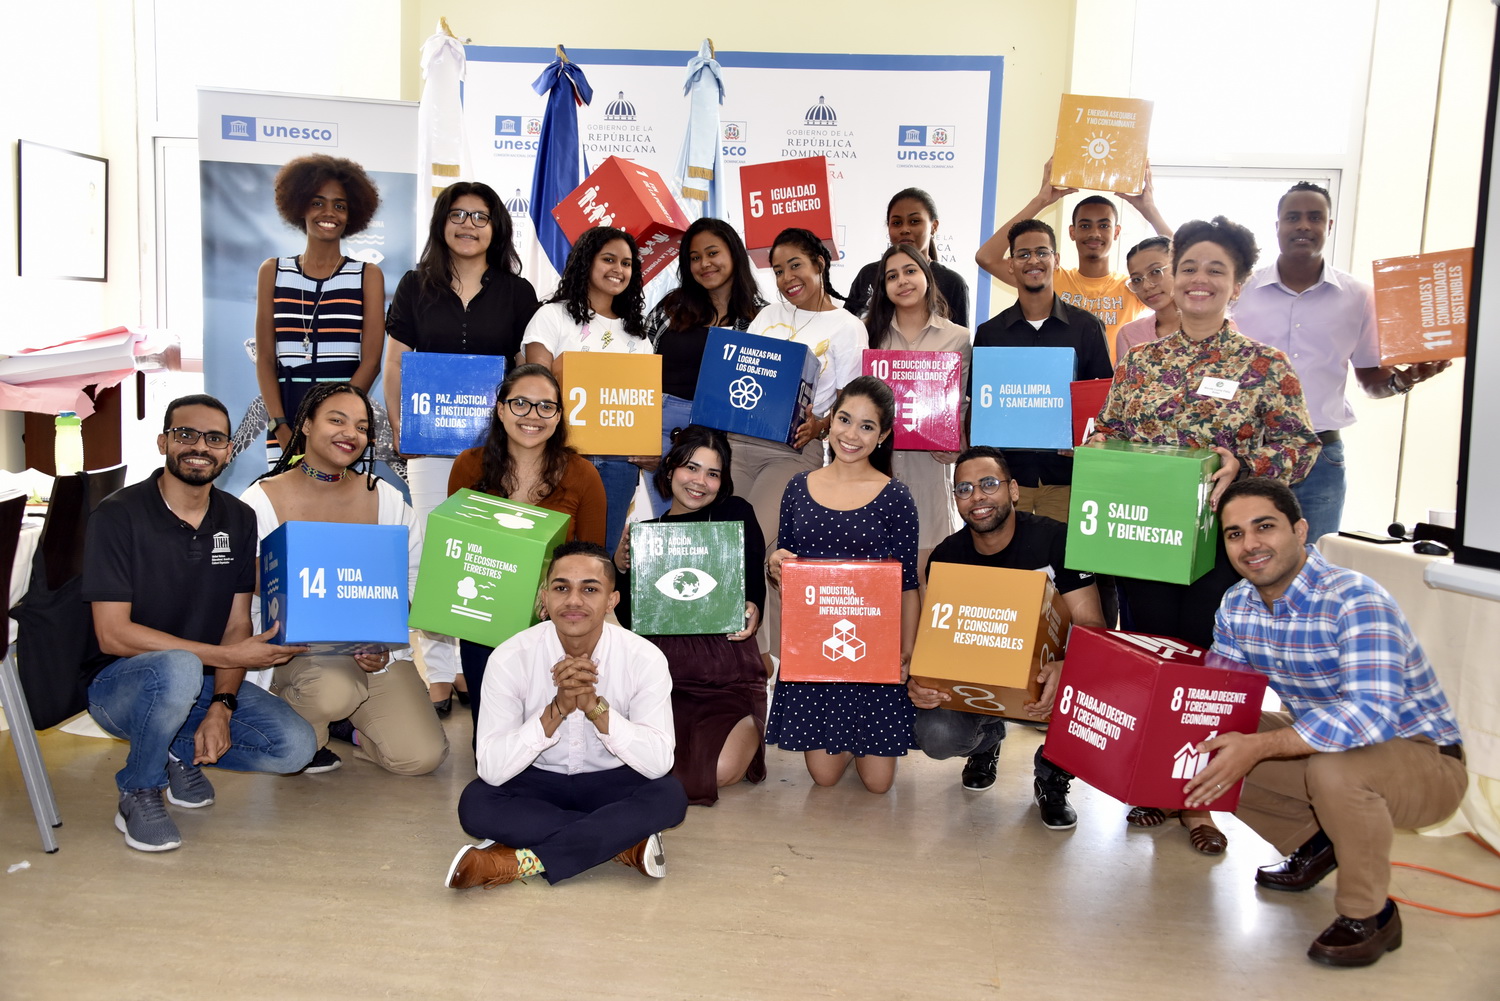 La UNESCO apoya la formación de jóvenes para impulsar la acción climática en la República Dominicana